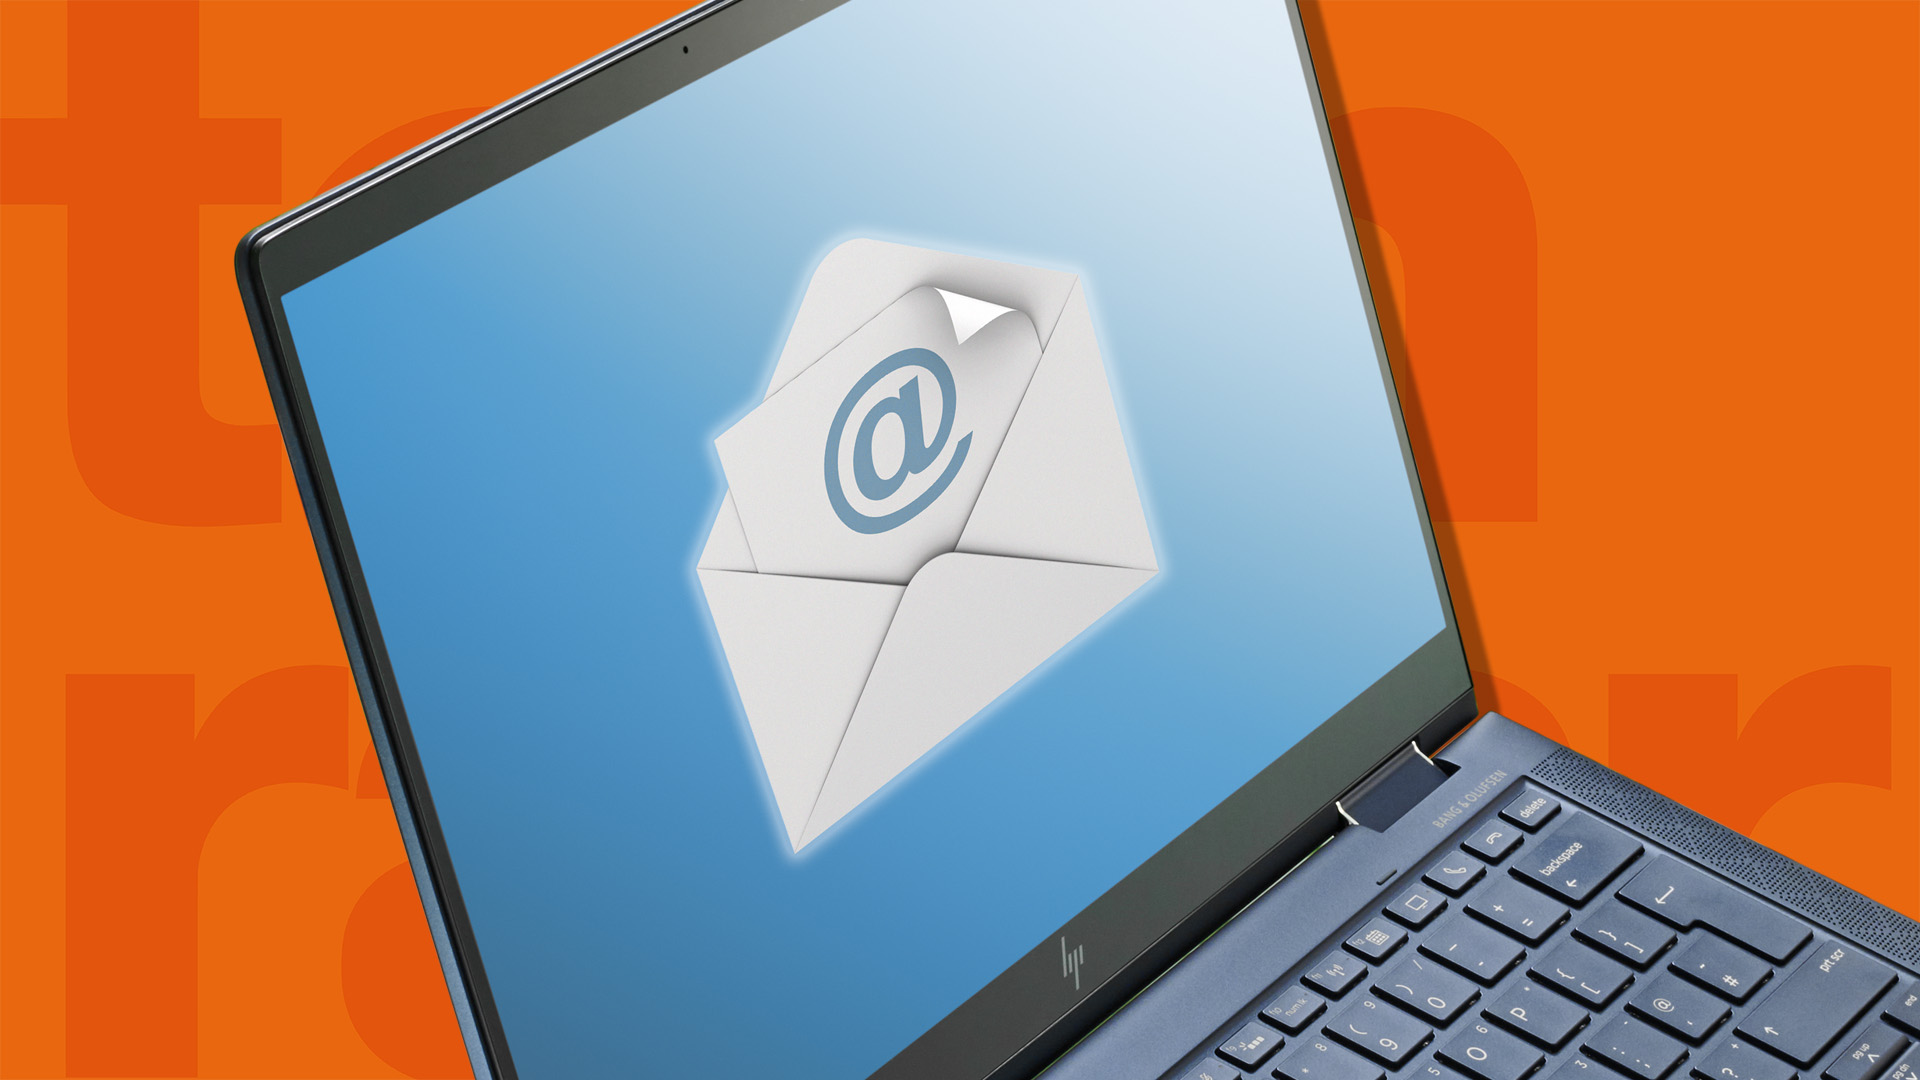 Los mejores servicios de correo electrónico: imagen de correo electrónico con una alerta de mensaje no leído